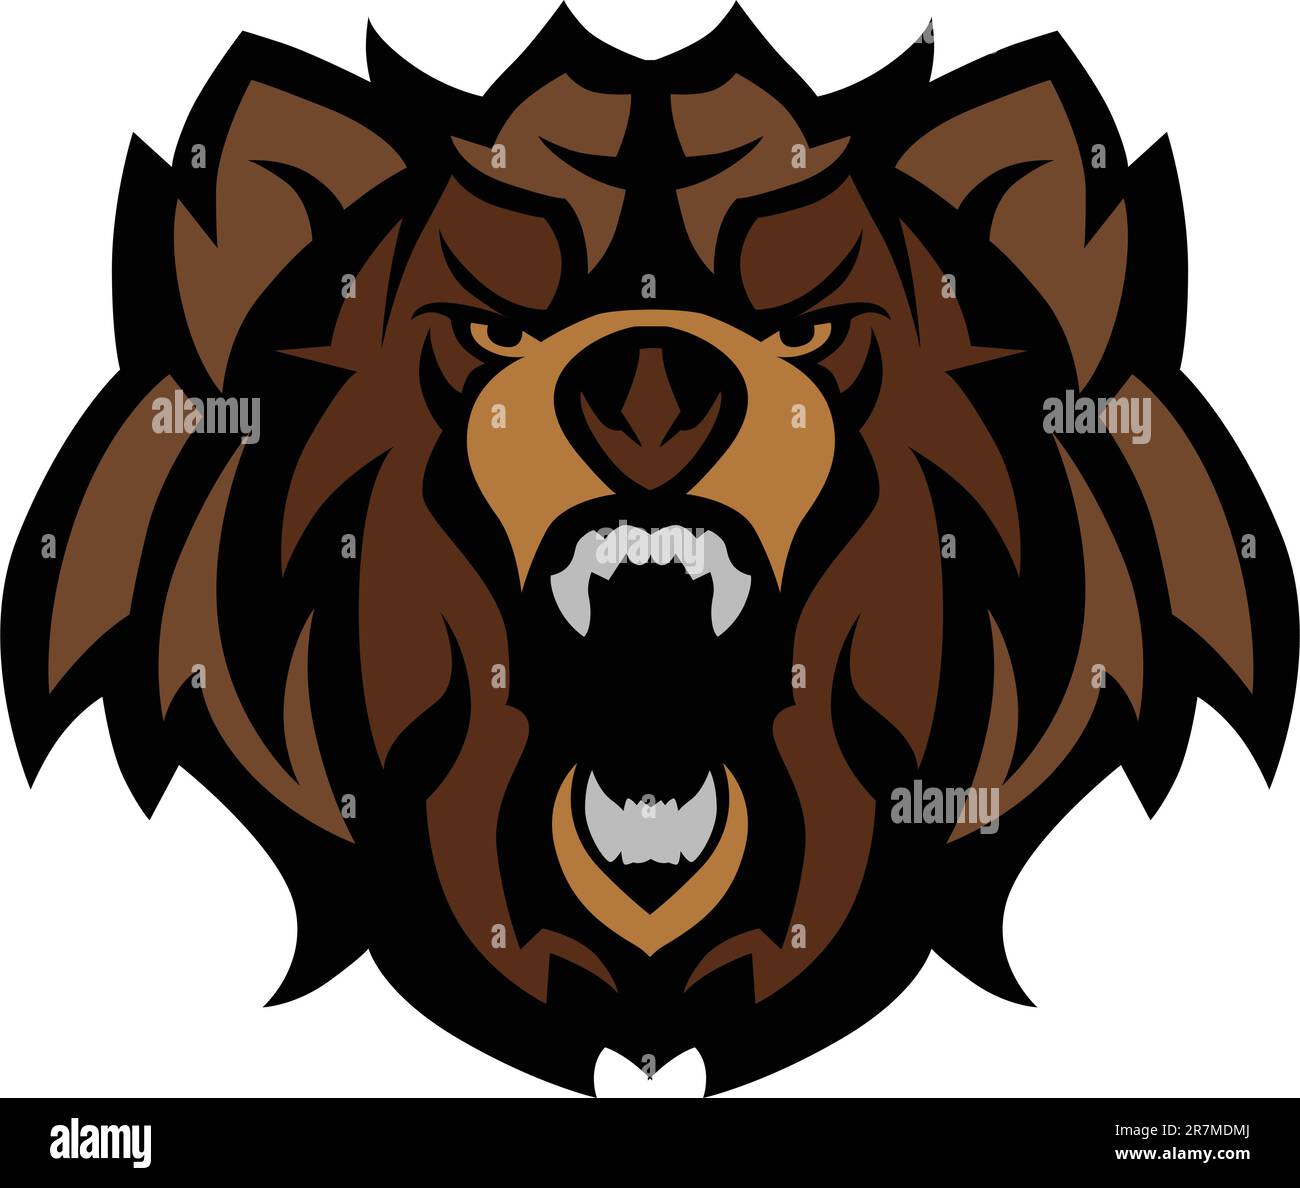 Immagine di una mascotte grafica della testa di un orso nero Illustrazione Vettoriale